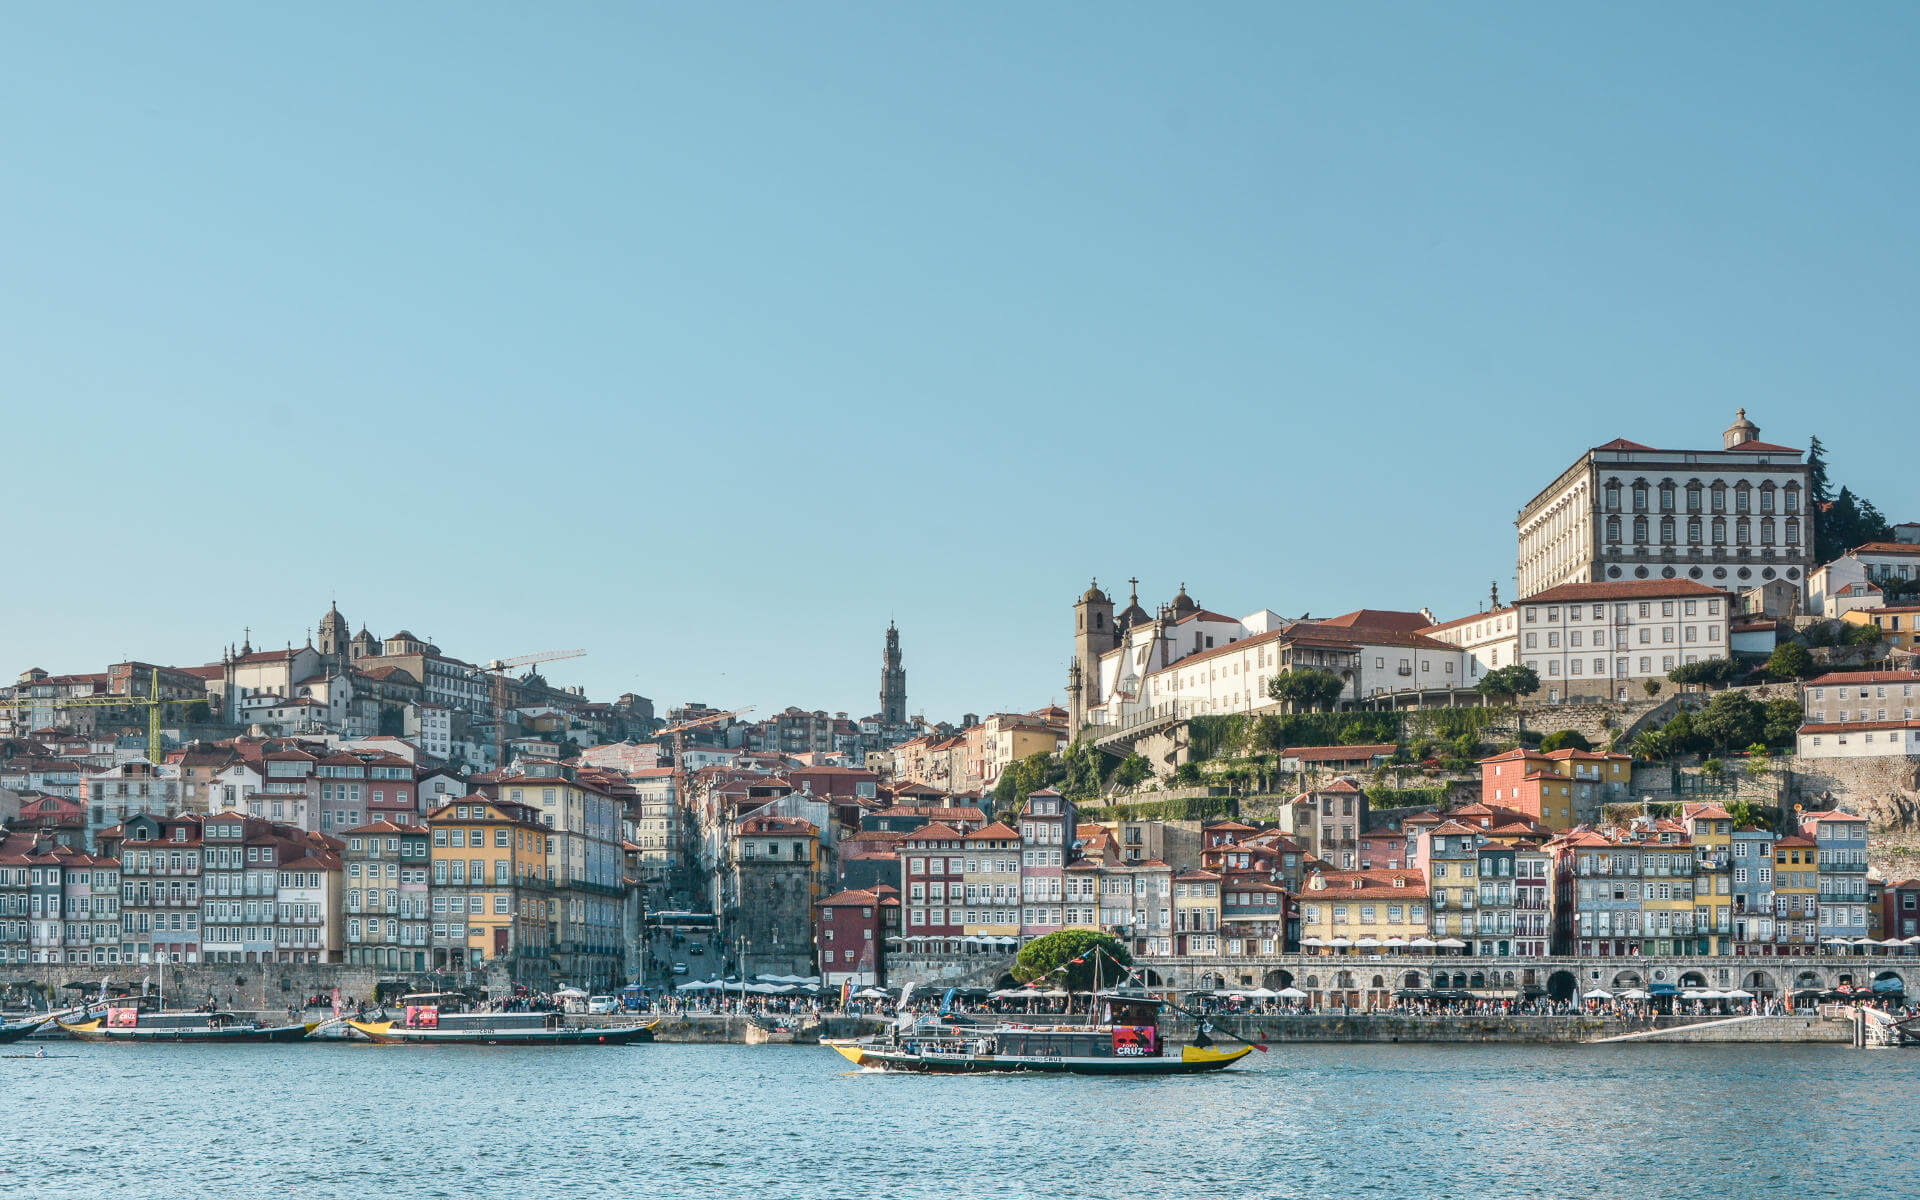 Der Blick über den Fluss auf die Stadtkulisse von Porto.